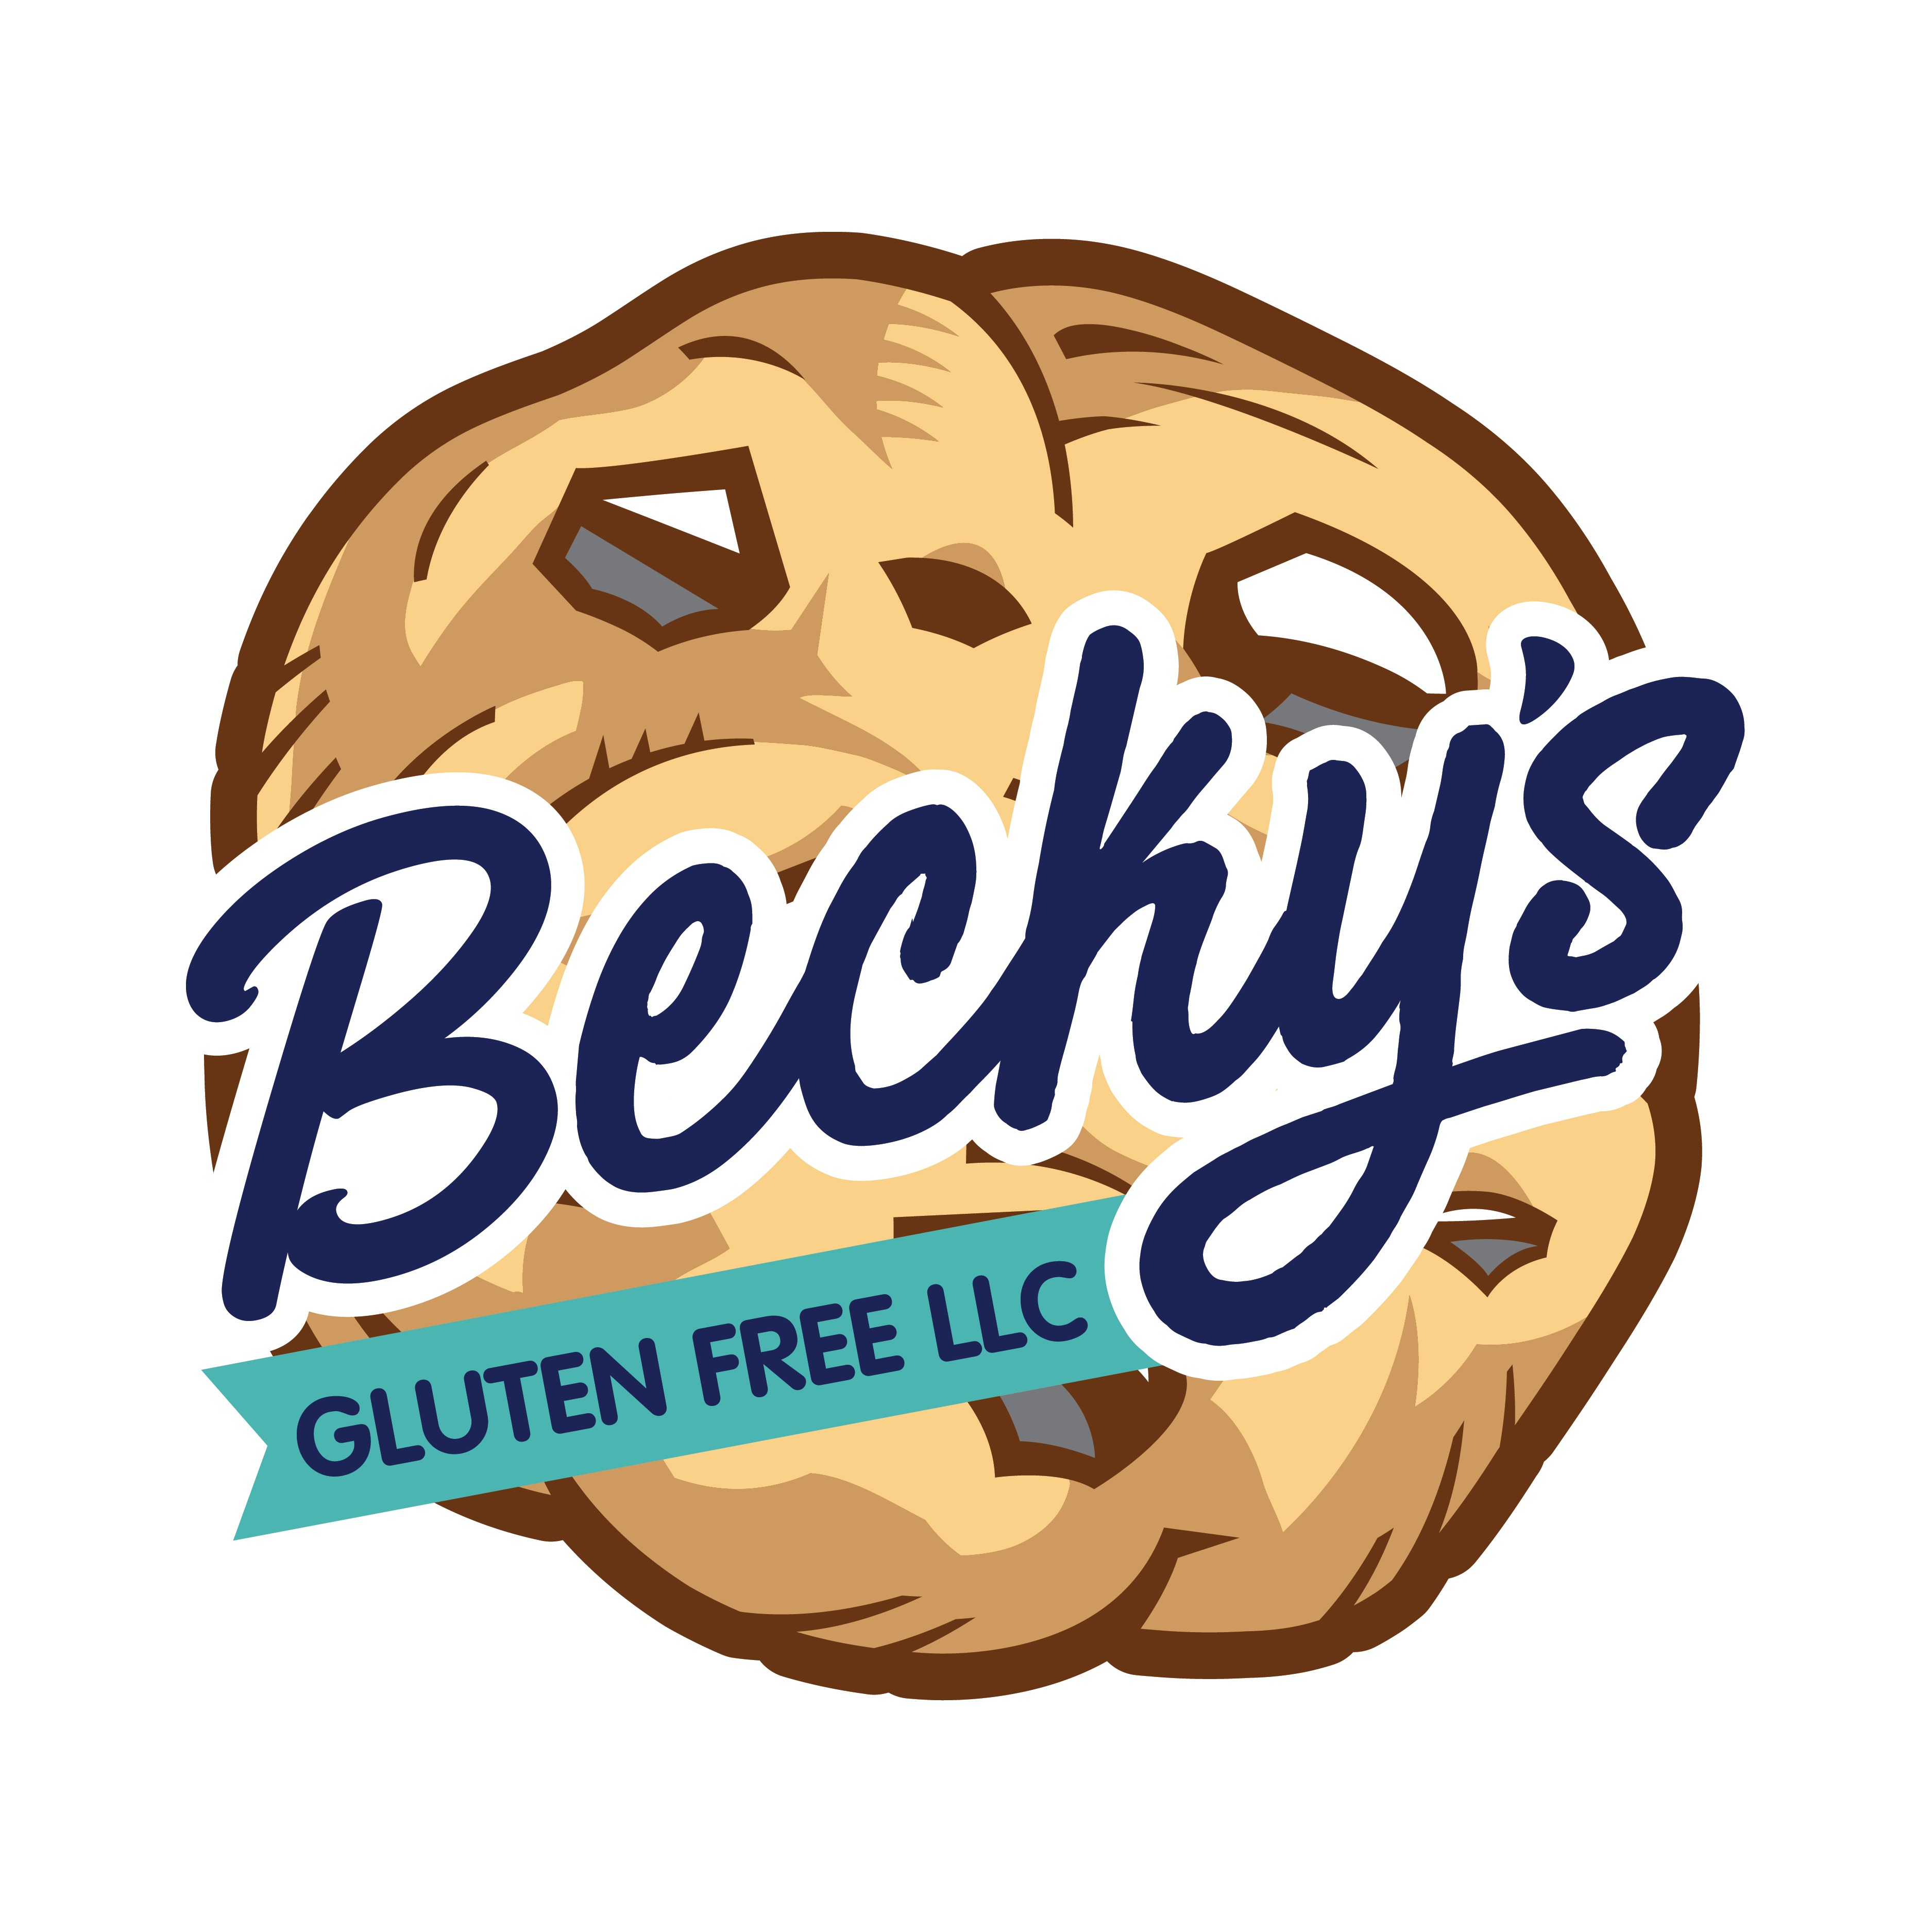 Becky's Gluten Free LLC 